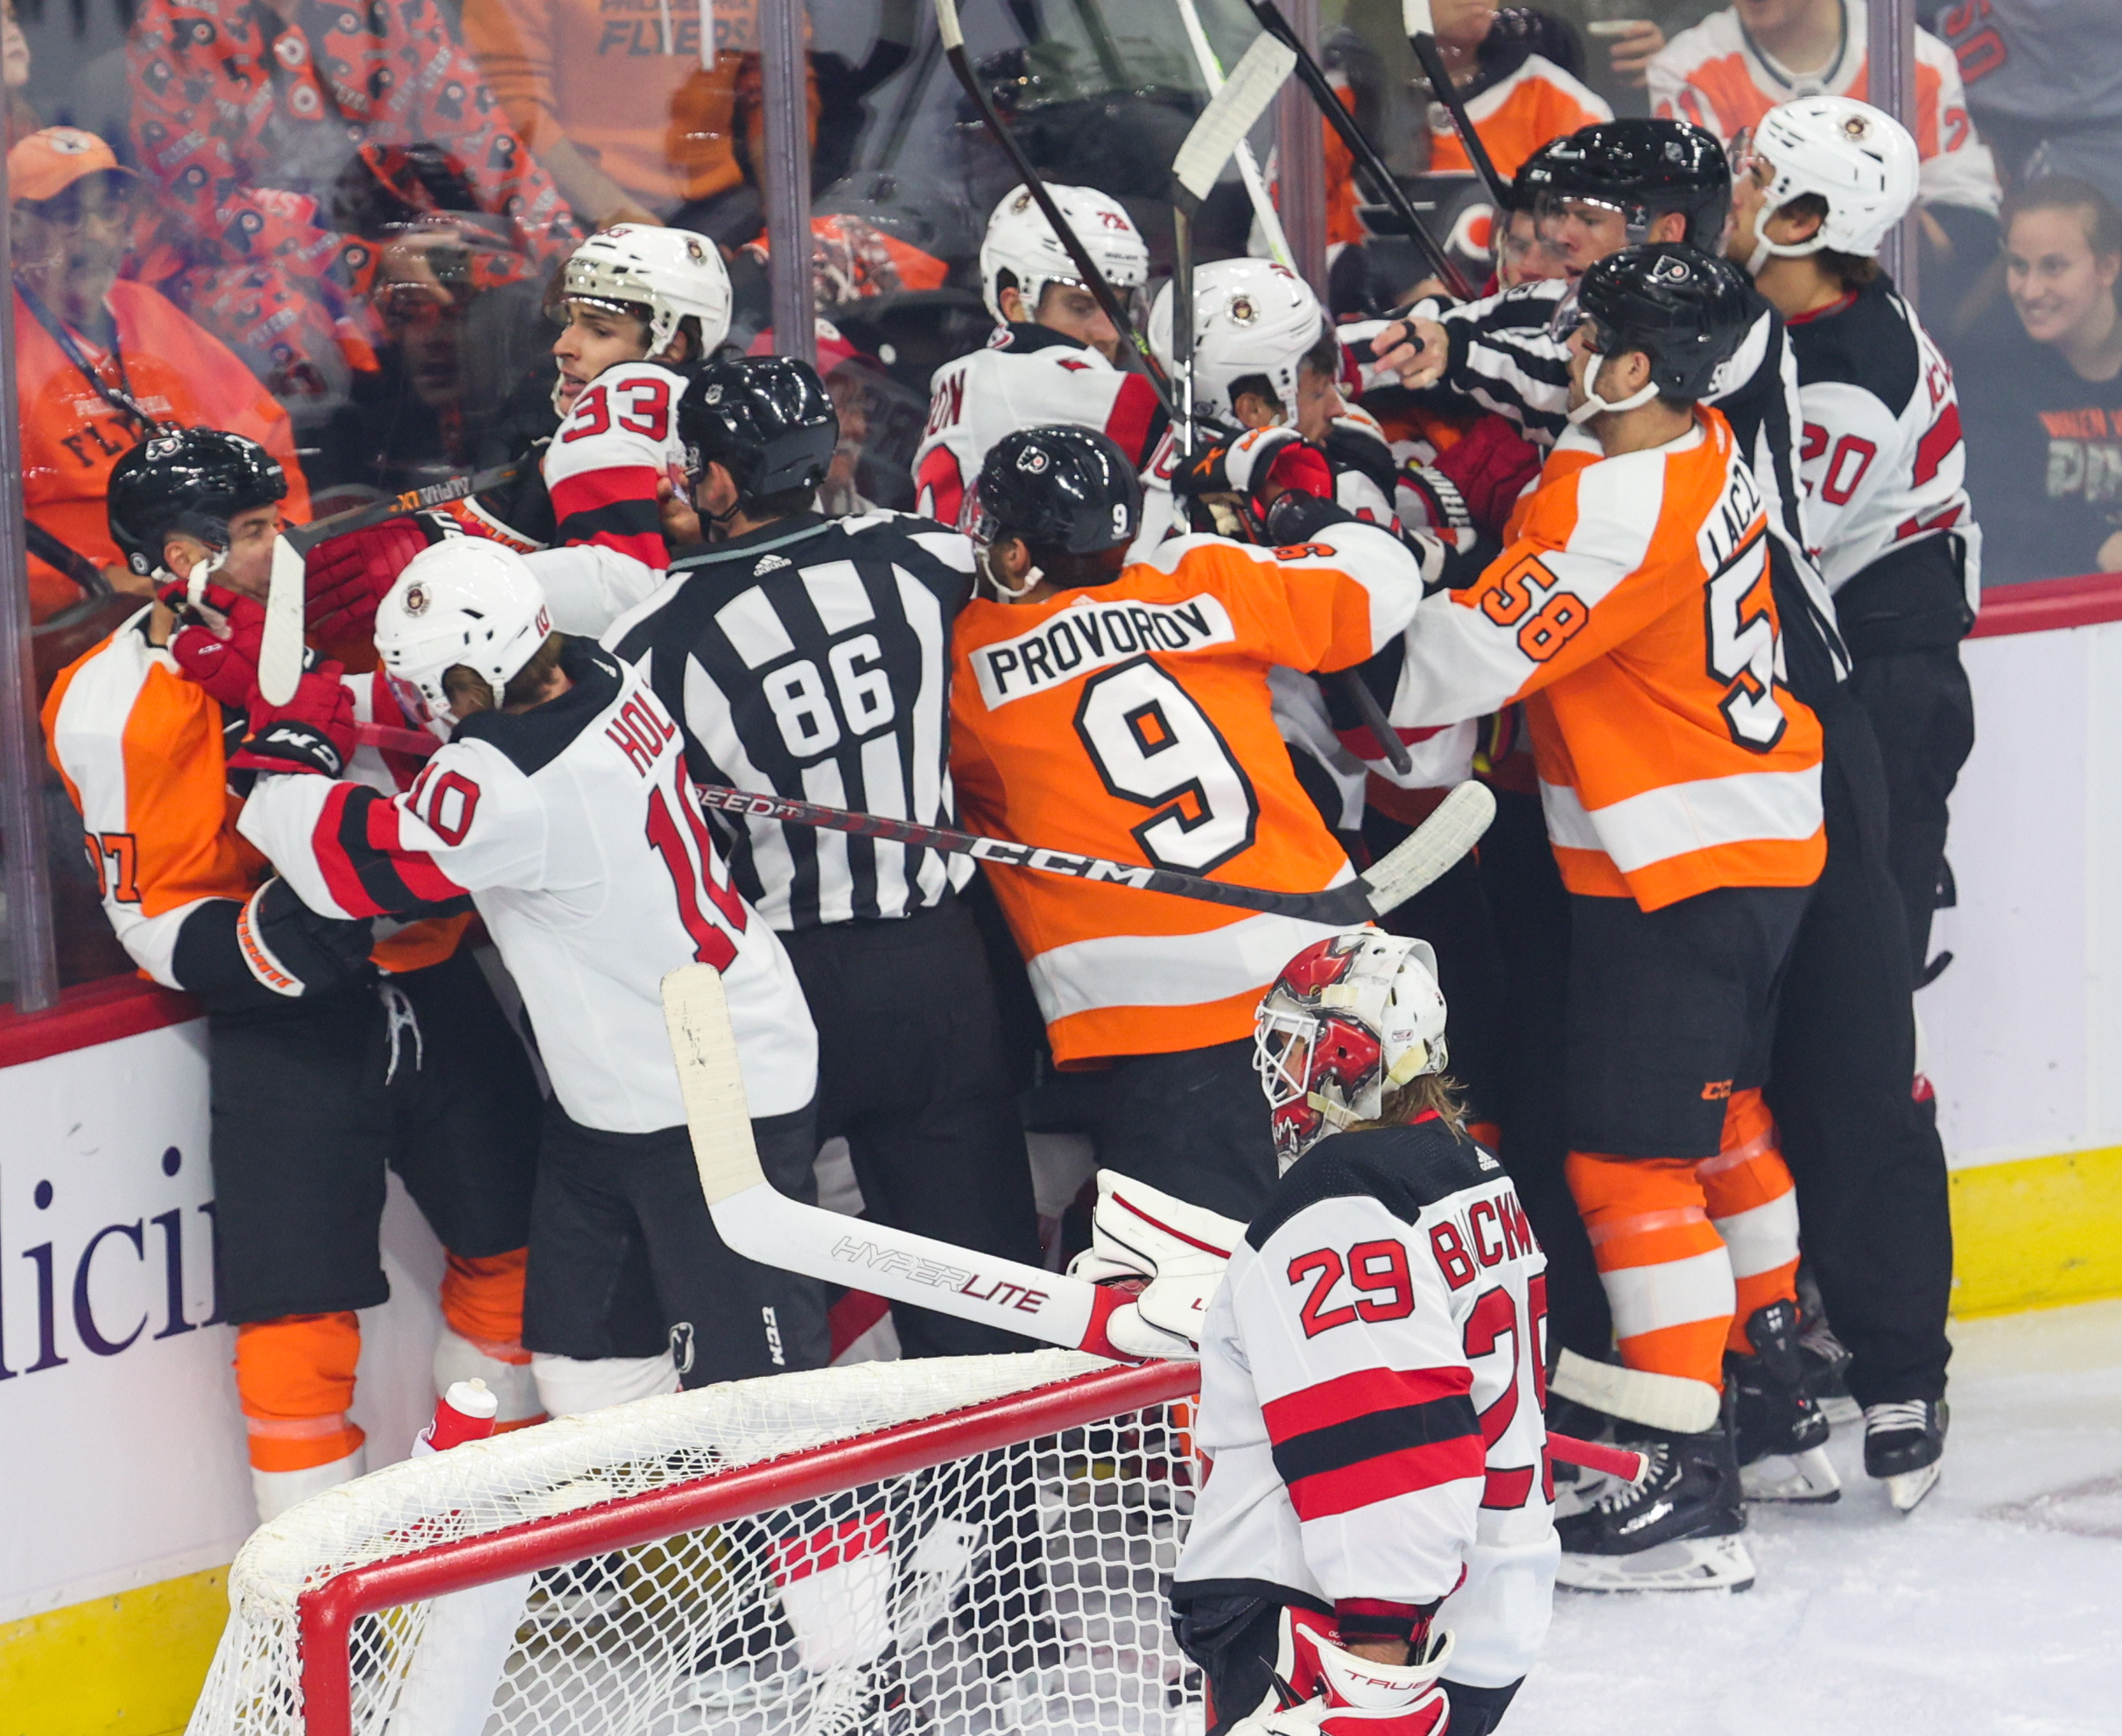 MetLife Stadium to host Flyers-Devils, Islanders-Rangers games